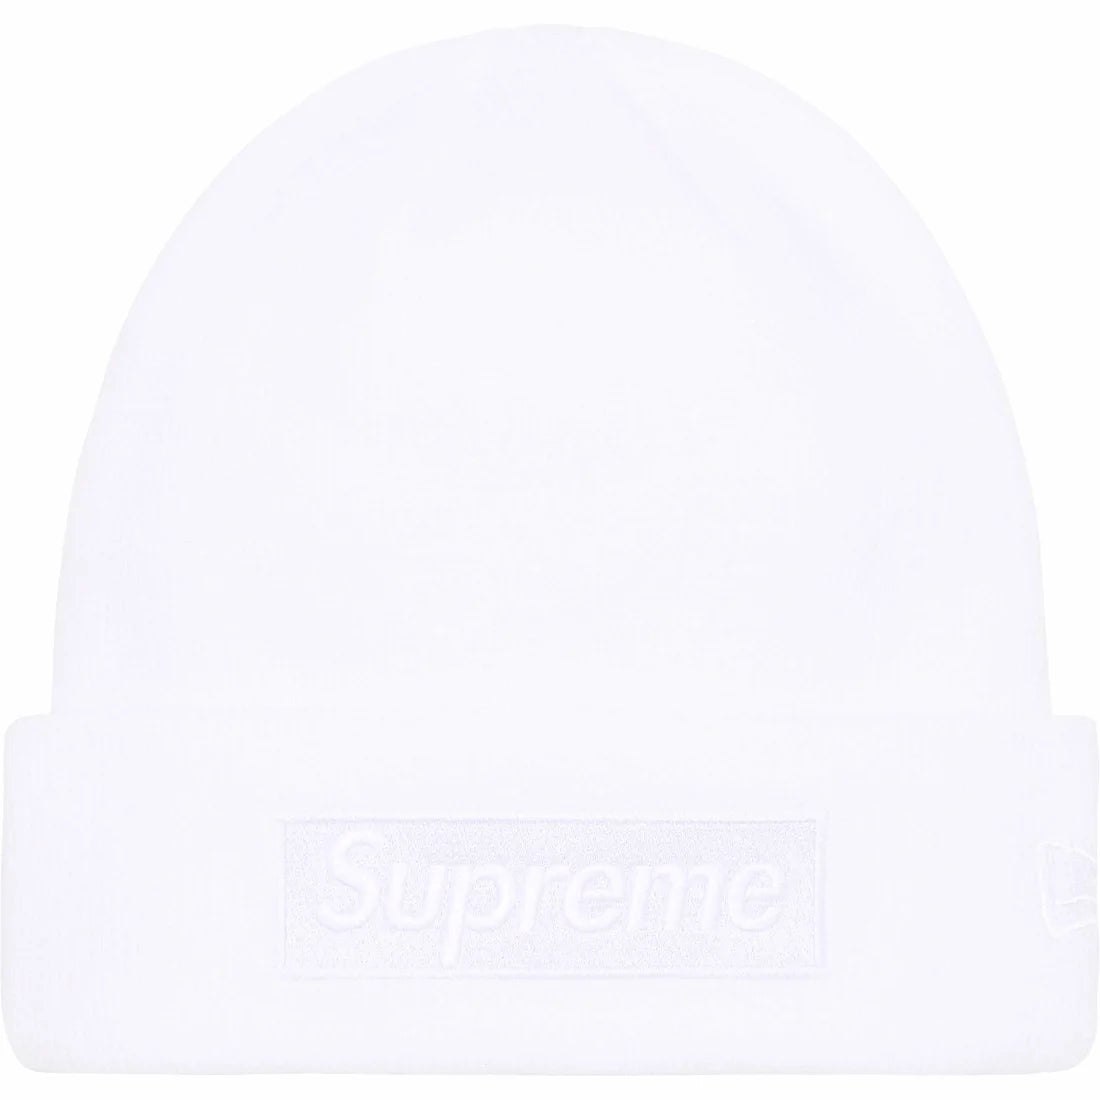 Supreme New Era Box Logo Beanie